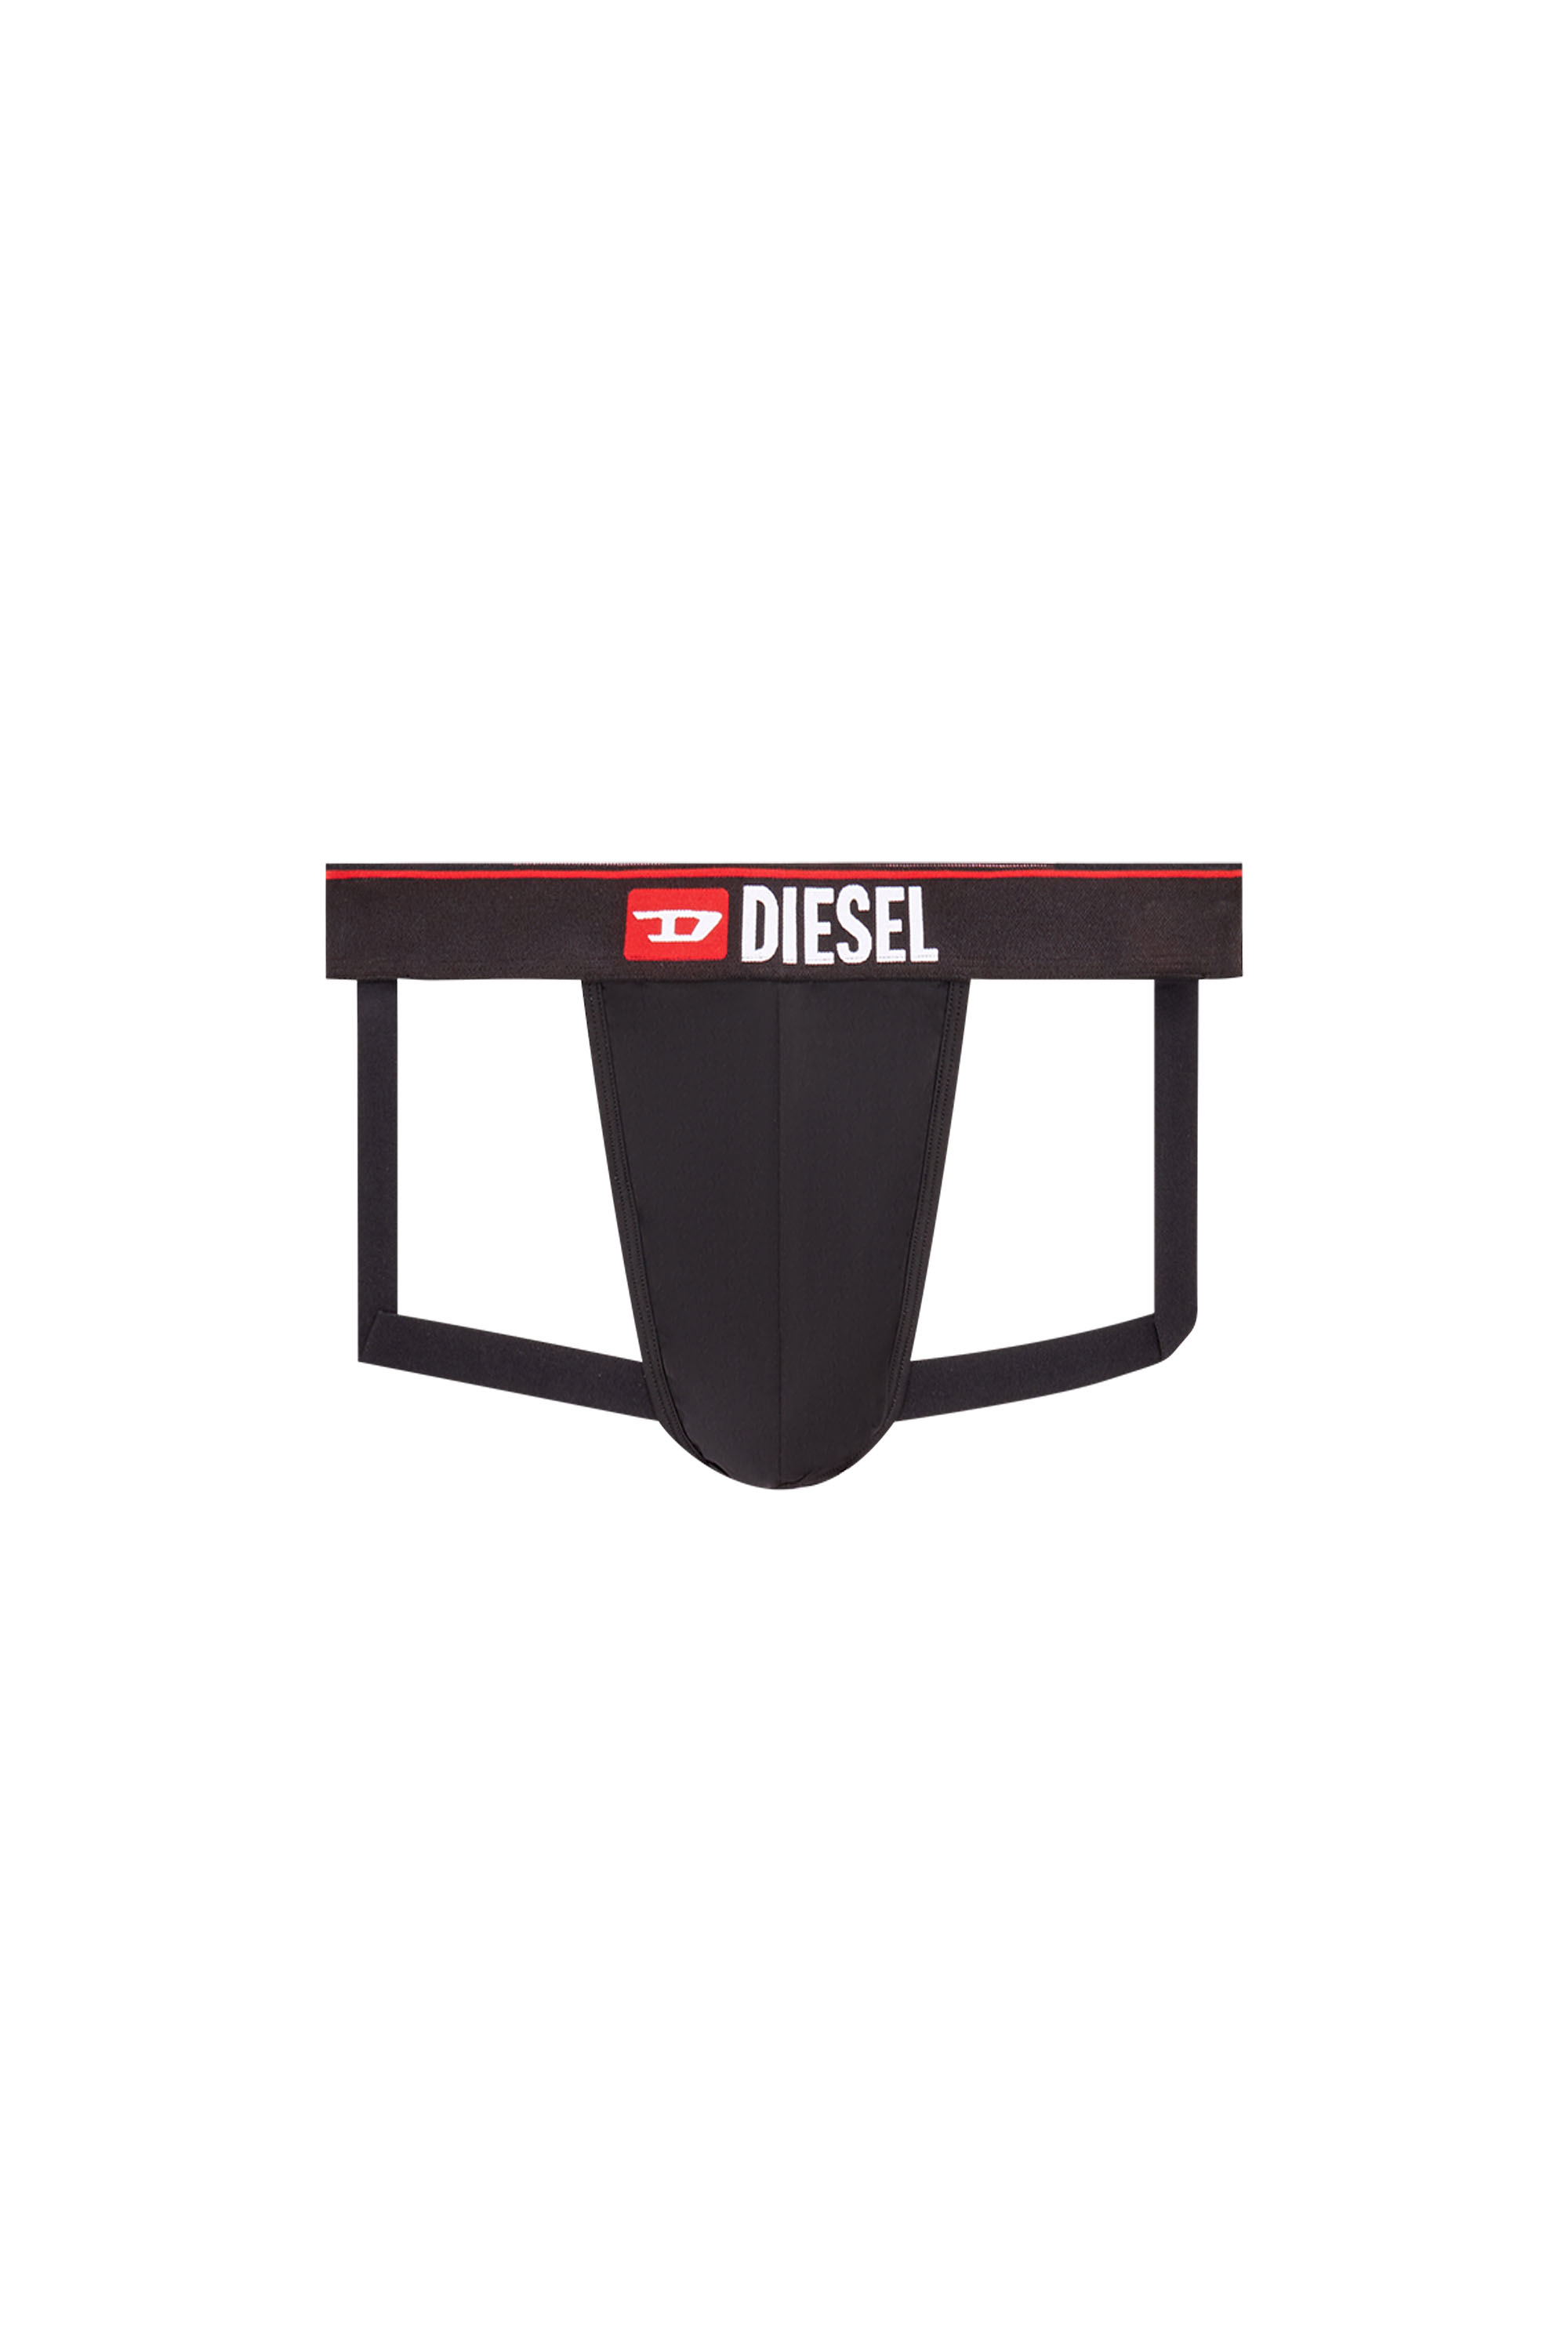 Diesel - UMBR-JOCKY, Schwarz - Image 1